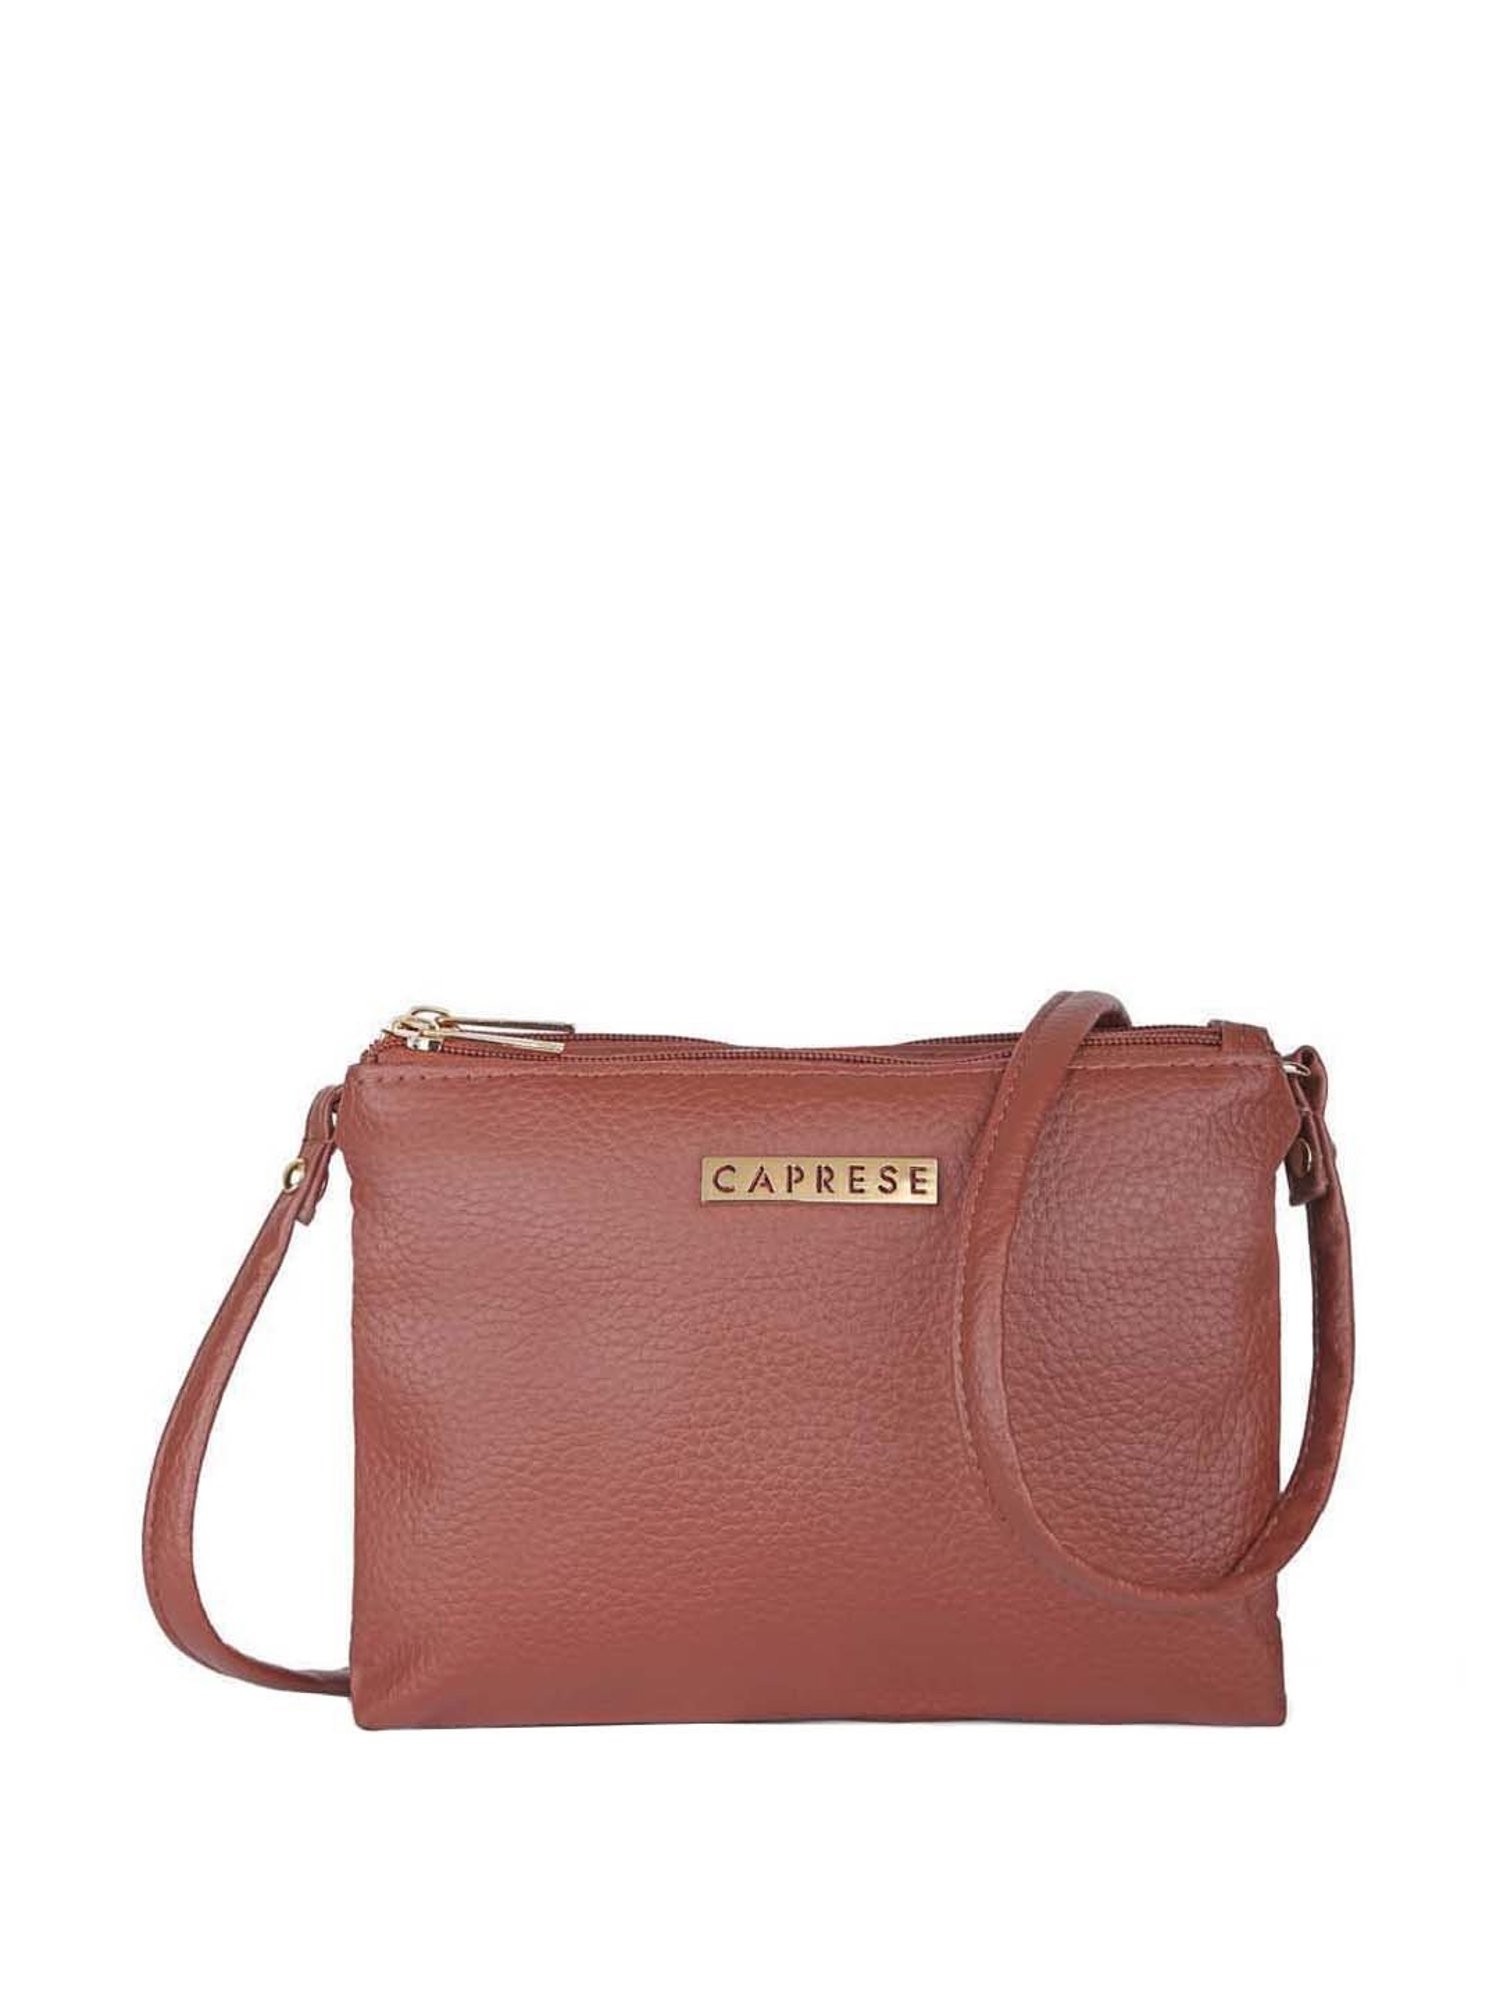 Buy Caprese womens LEONA T Medium BROWN Tote Bag at Amazon.in